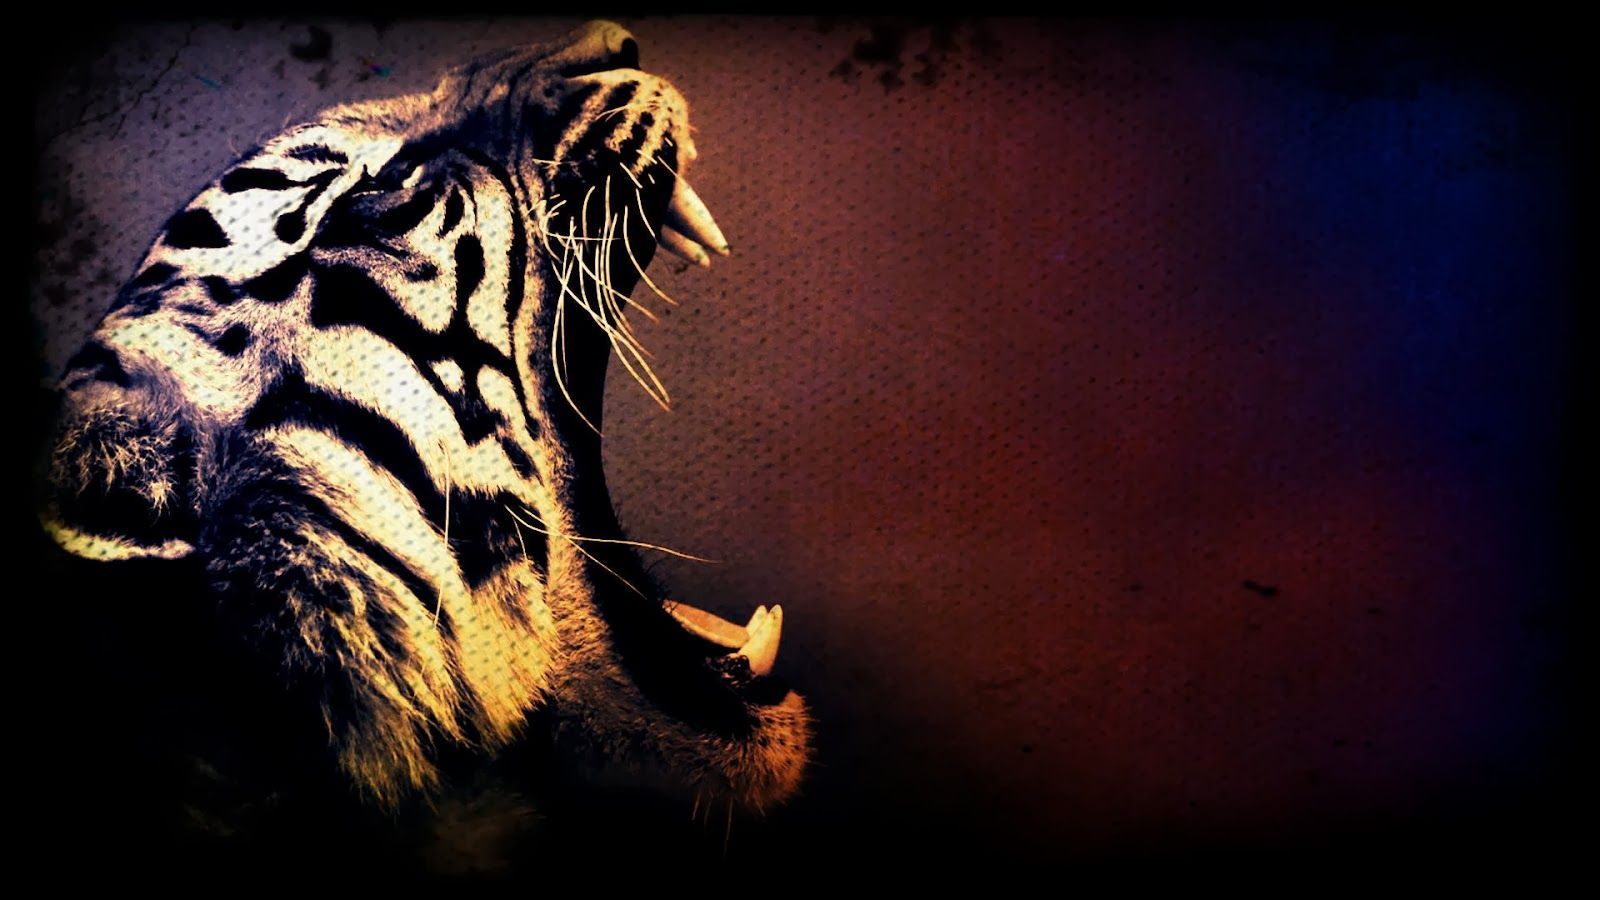 Tiger art, Tiger picture, Tiger wallpaper.com